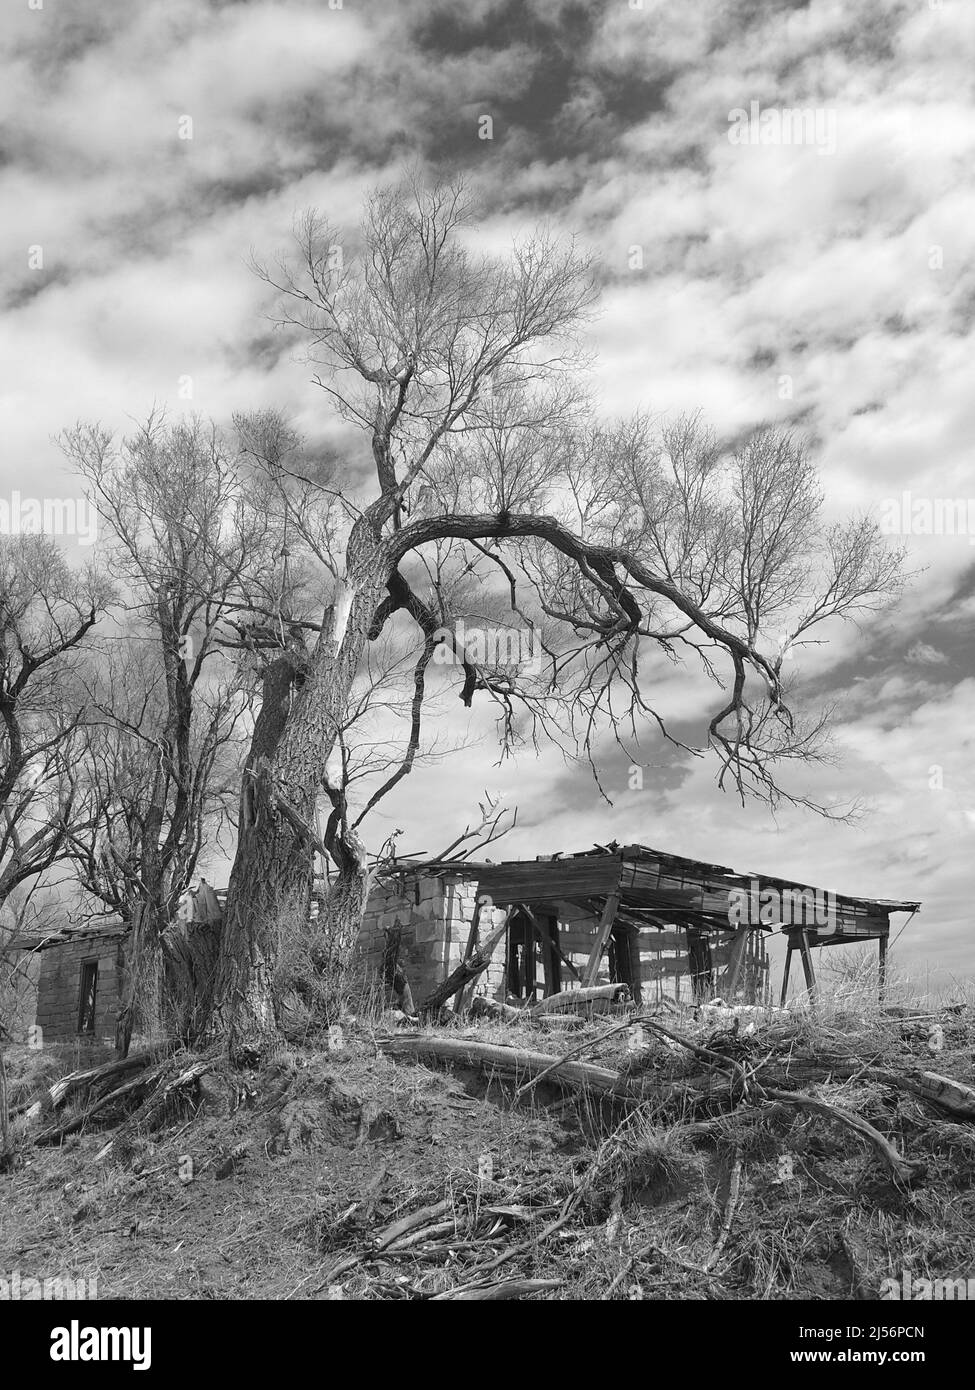 Des bâtiments abandonnés abandonnés le long de la route 24 des États-Unis près de Gettysburg, Kansas, montrent les effets de la négligence et du temps. Banque D'Images